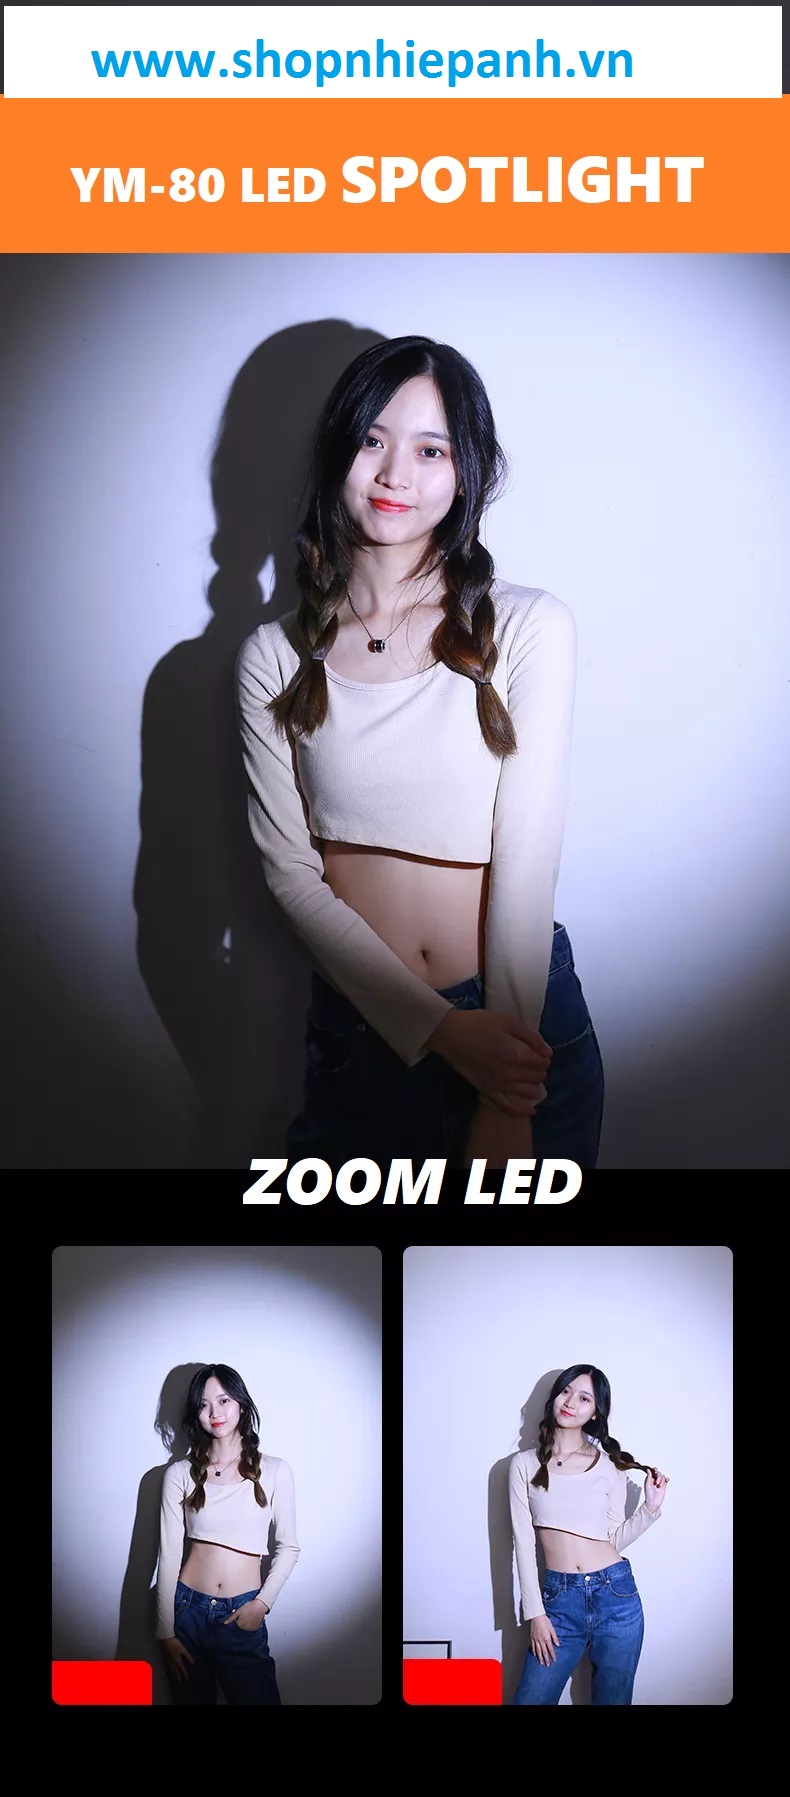 thumbnail LED chiếu điểm spot light YM-80 zoom led bicolor 2700K-6500K (đèn giả nắng) - 7